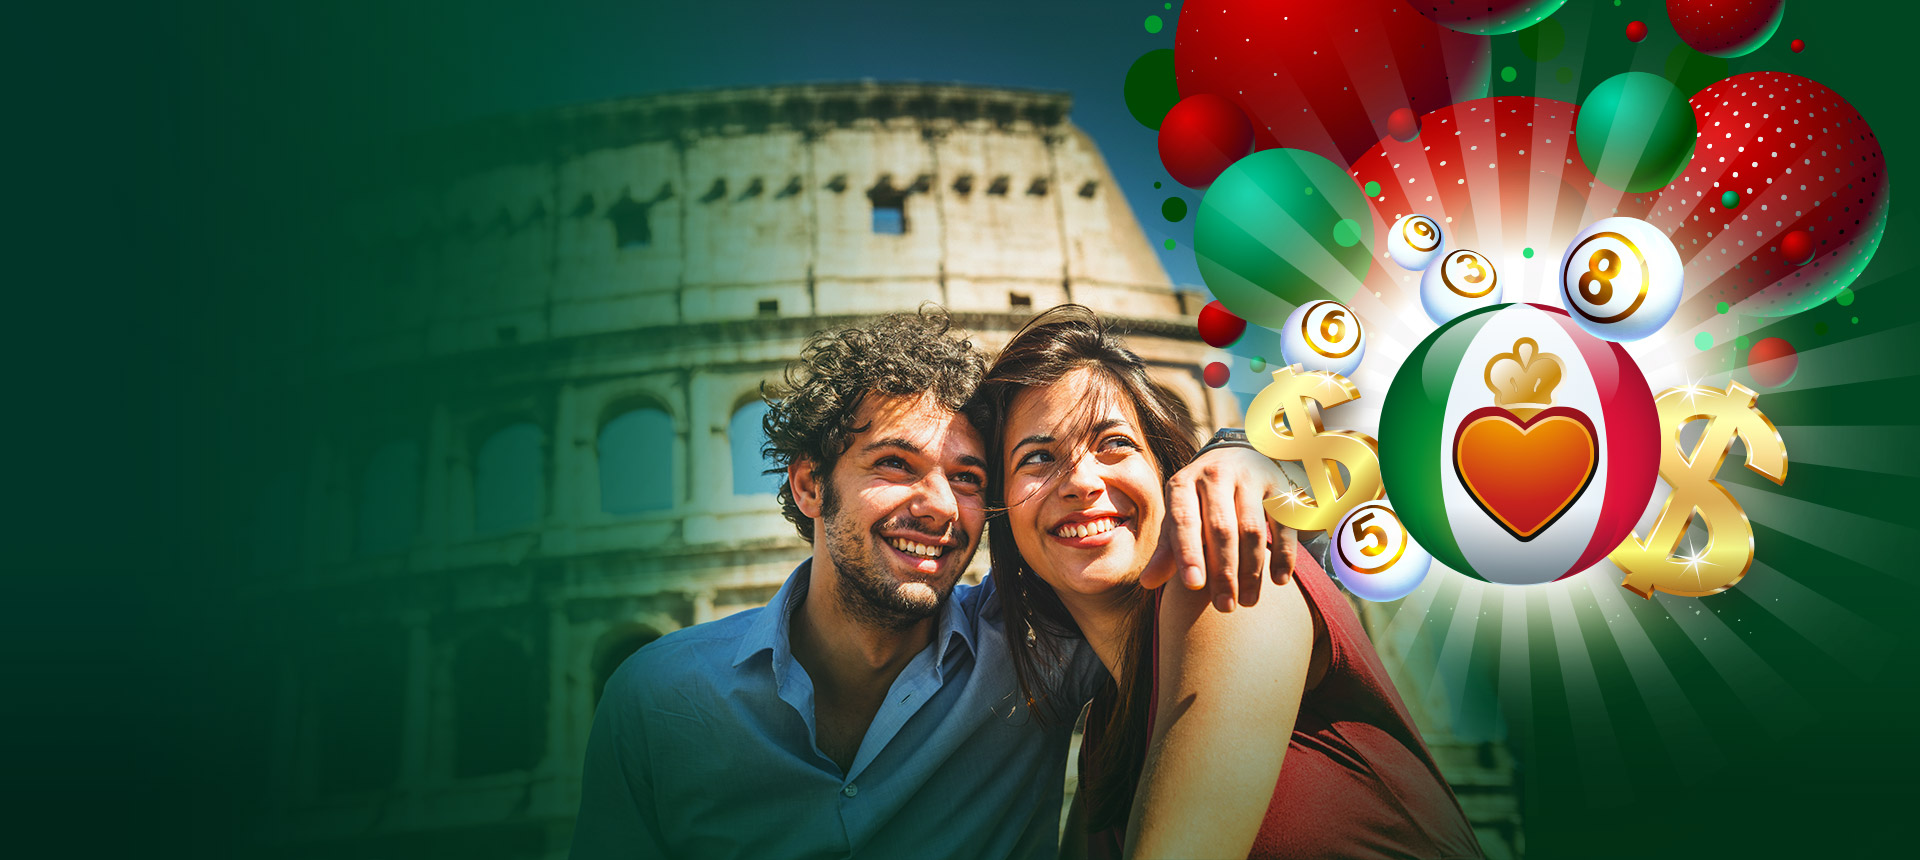 Aproveite a melhor loteria da Itália! #CURRENCY# #JACKPOT# #MILLION# agora!